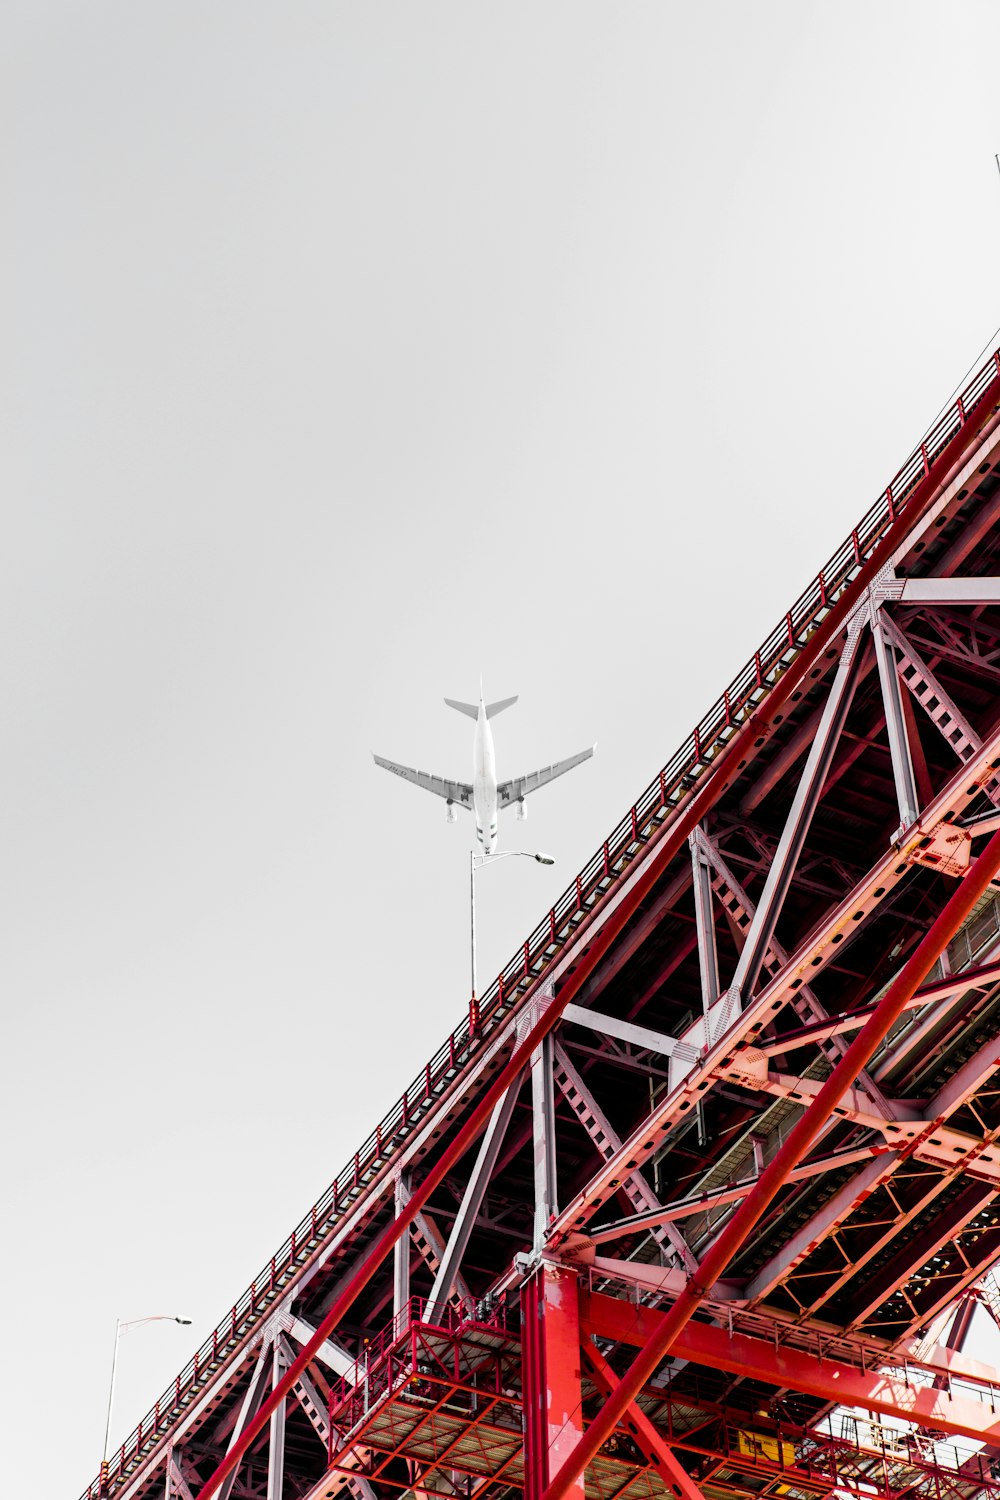 Fotografía de ángulo bajo del avión de transporte sobre el puente